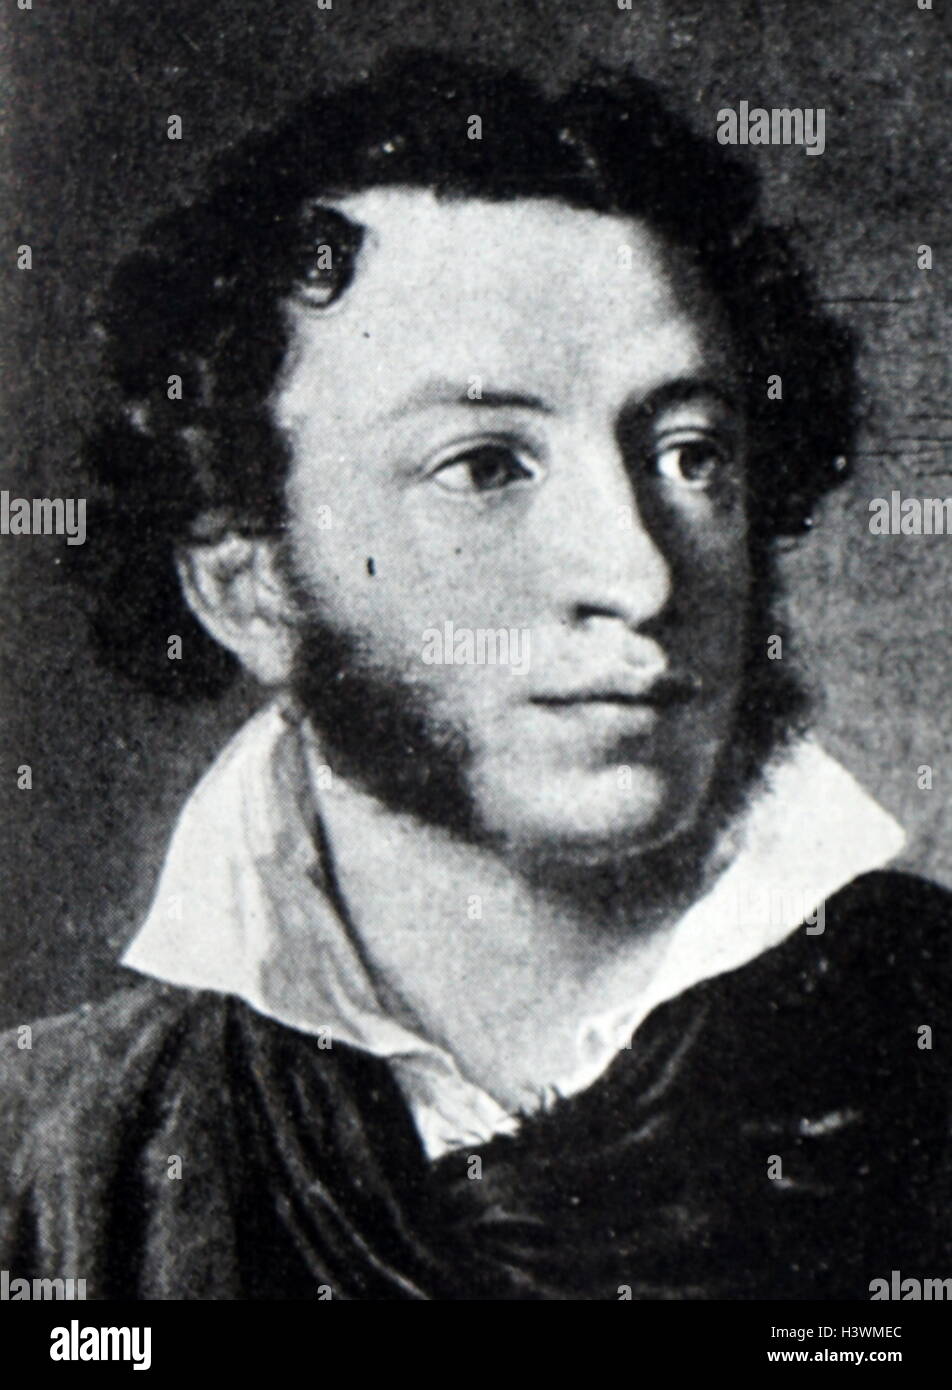 Porträt von Alexander Pushkin (1799-1837), russischer Dichter, Dramatiker und Romancier. Vom 19. Jahrhundert Stockfoto